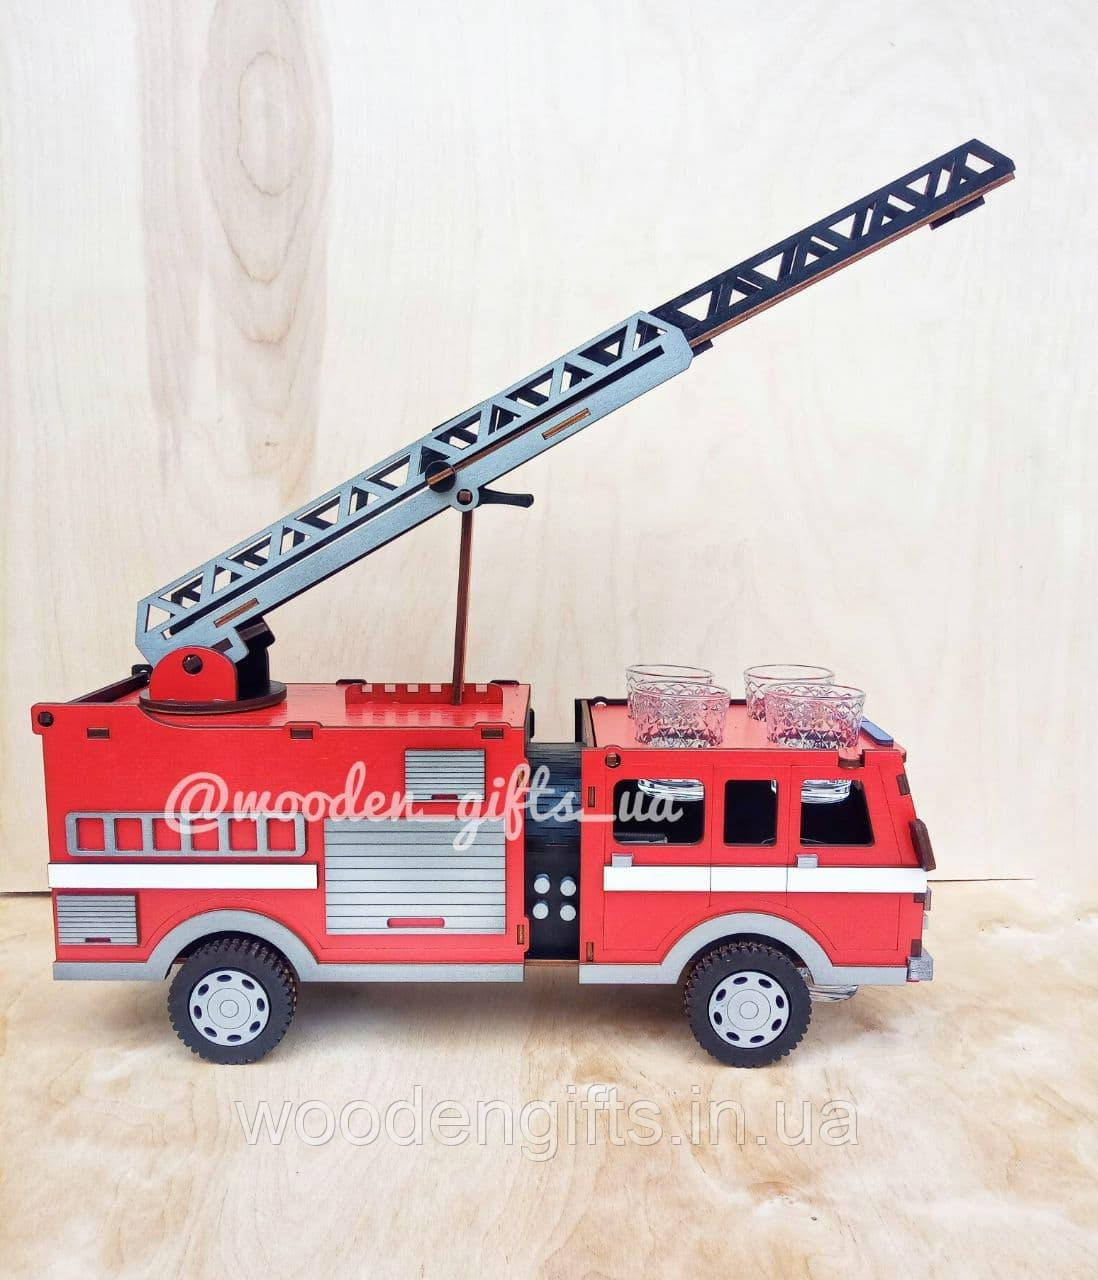 Пожежна машина пыдставка пыд бутилку з дерева для подарунка пожежнику, рятувальнику, чоловіку, пожежній частині